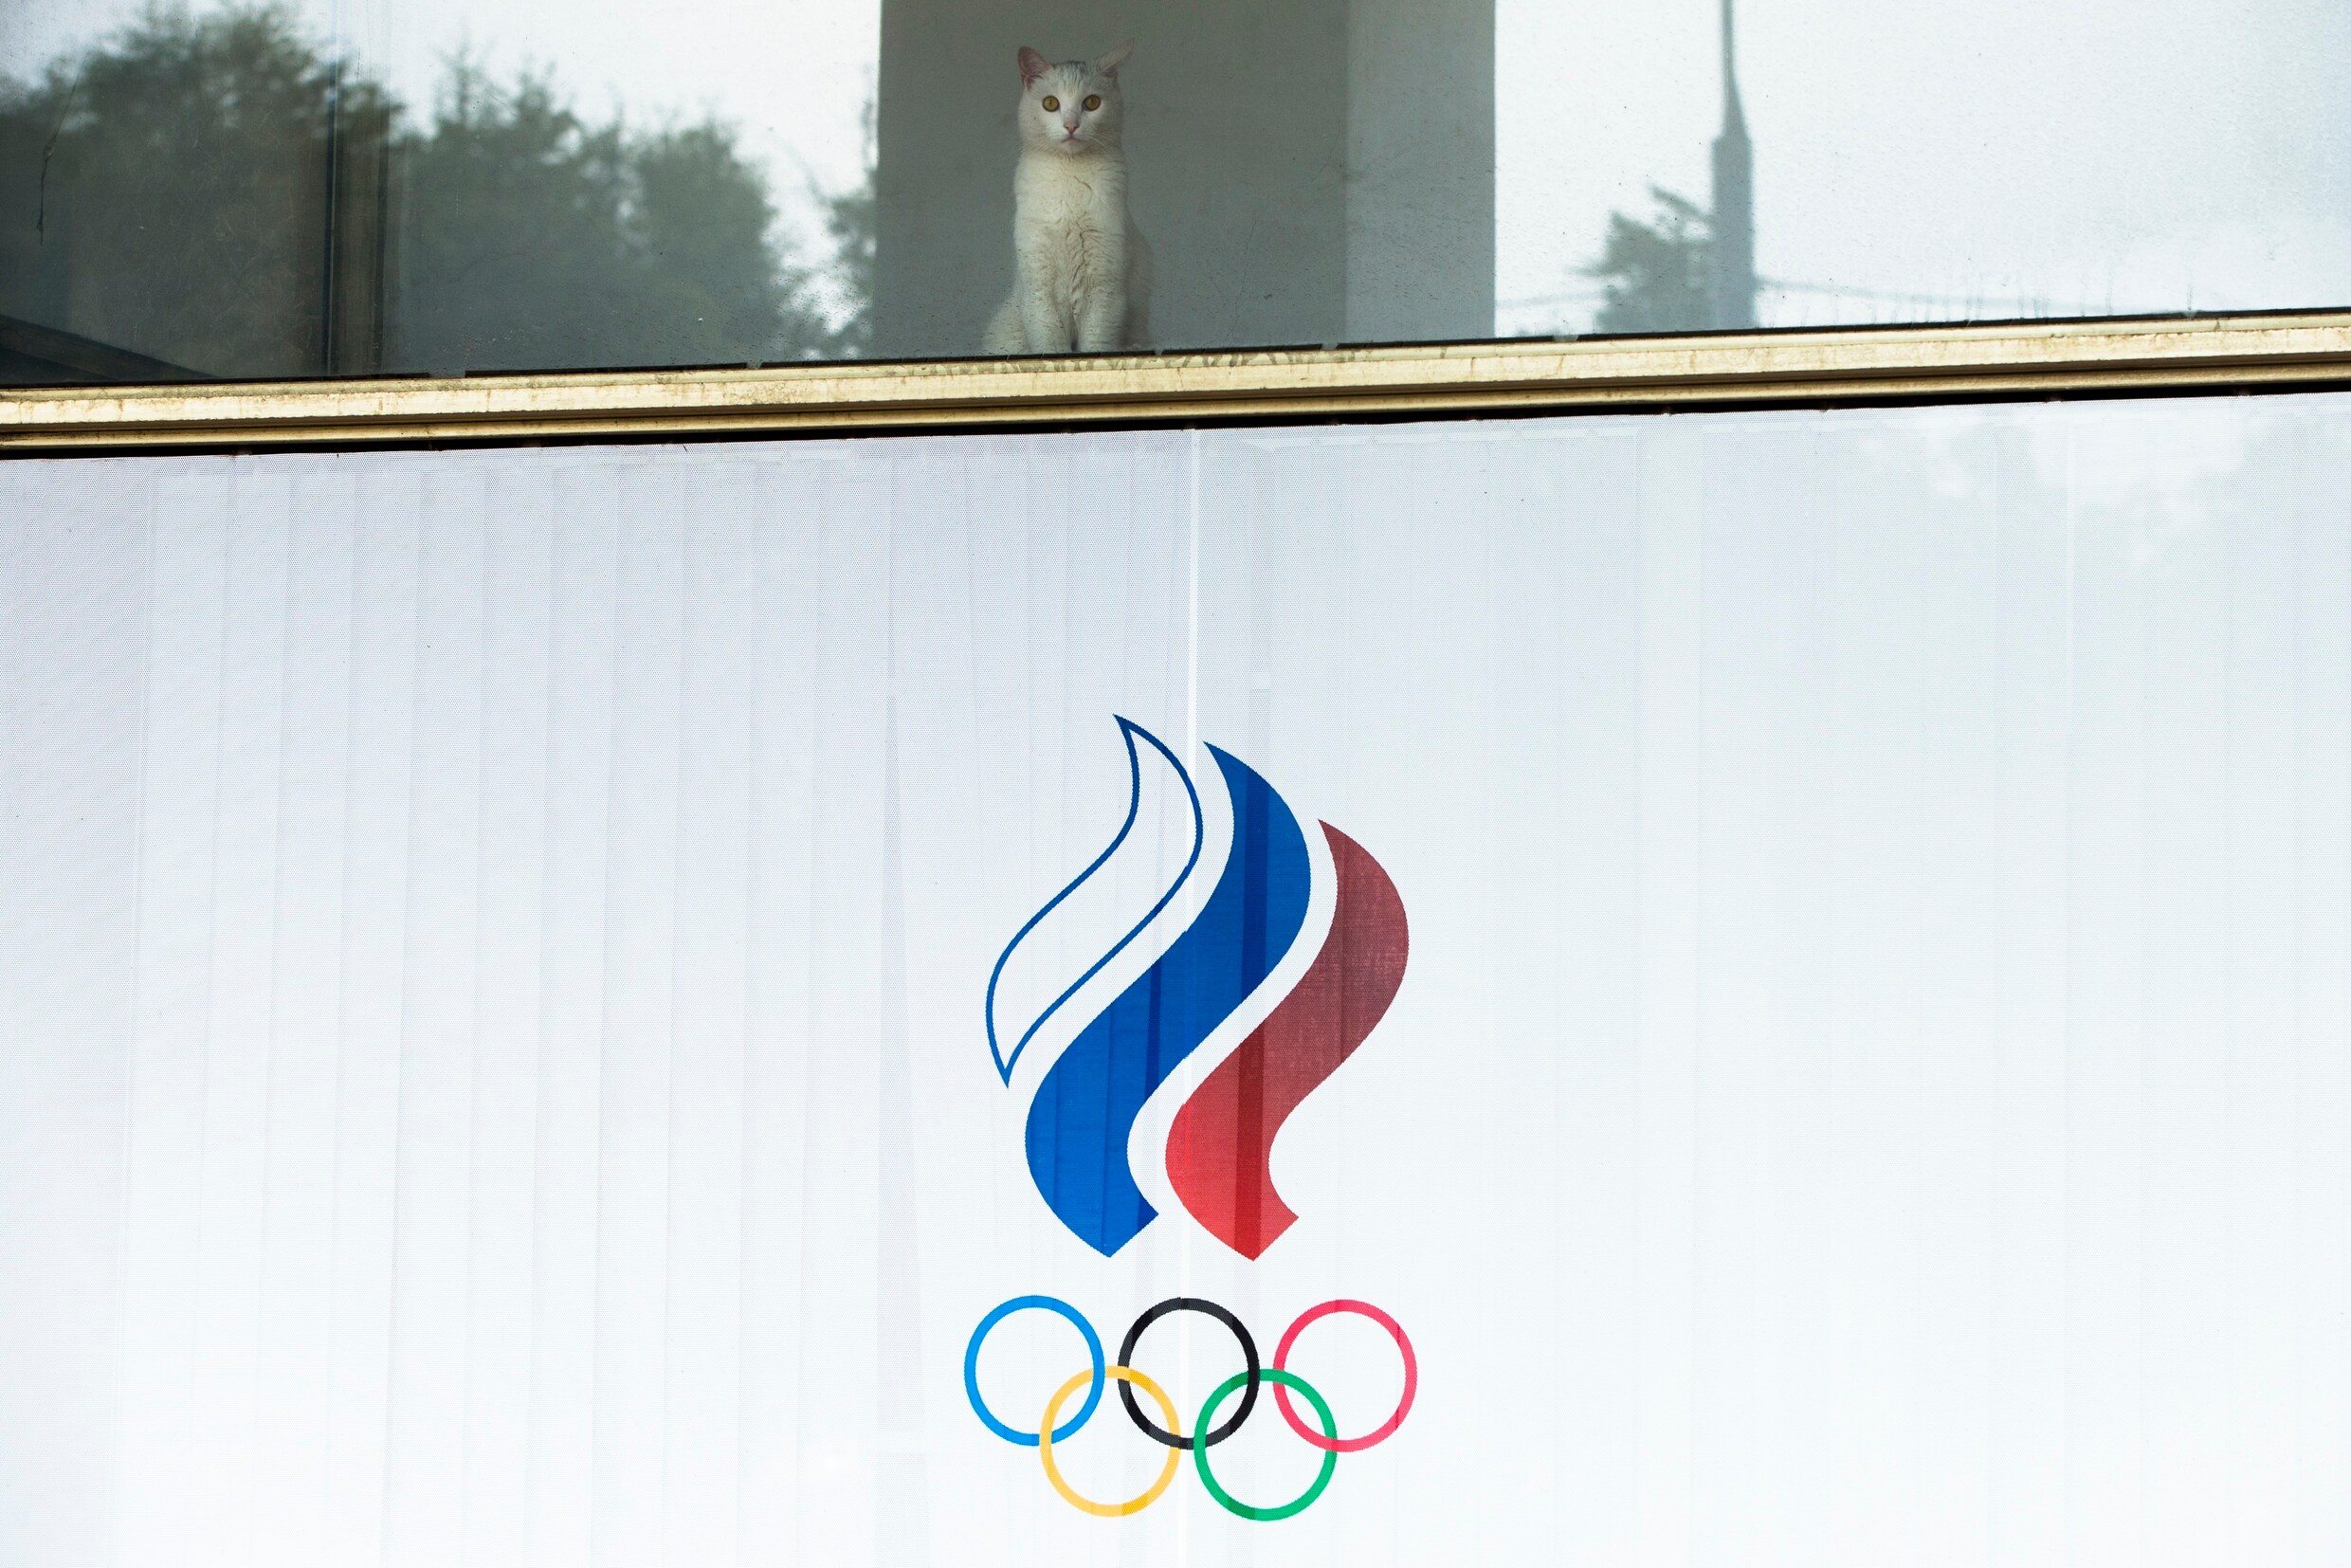 Russische sporters mogen onder strenge voorwaarden toch naar Spelen